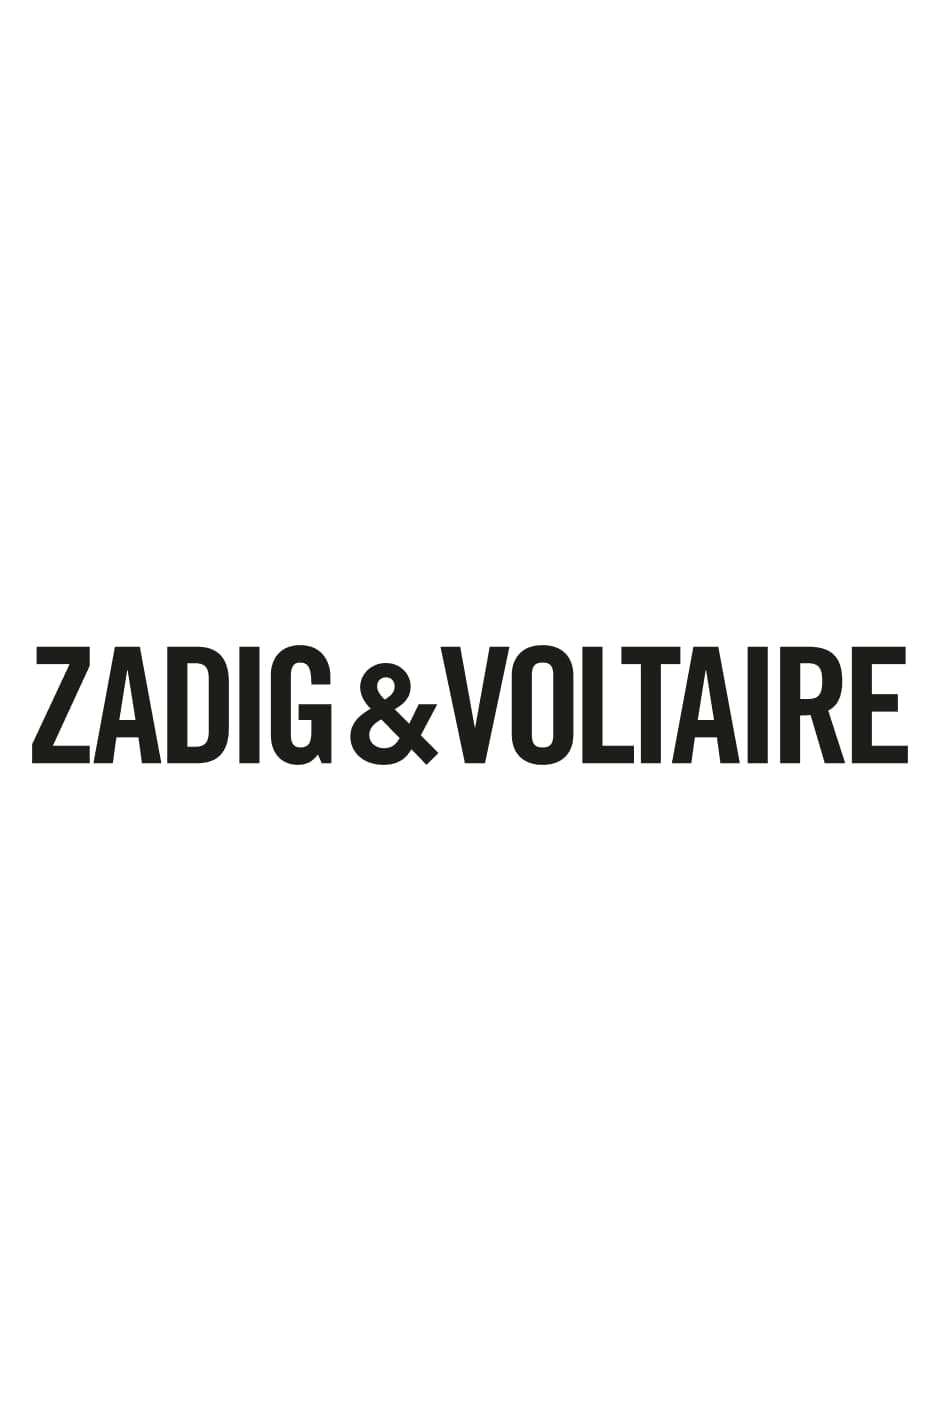 Felpa Spencer Strass Stampa fotografica Felpa da donna con cerniera e cappuccio grigio screziato decorata di stampe tag manifesto Zadig&Voltaire e strass.